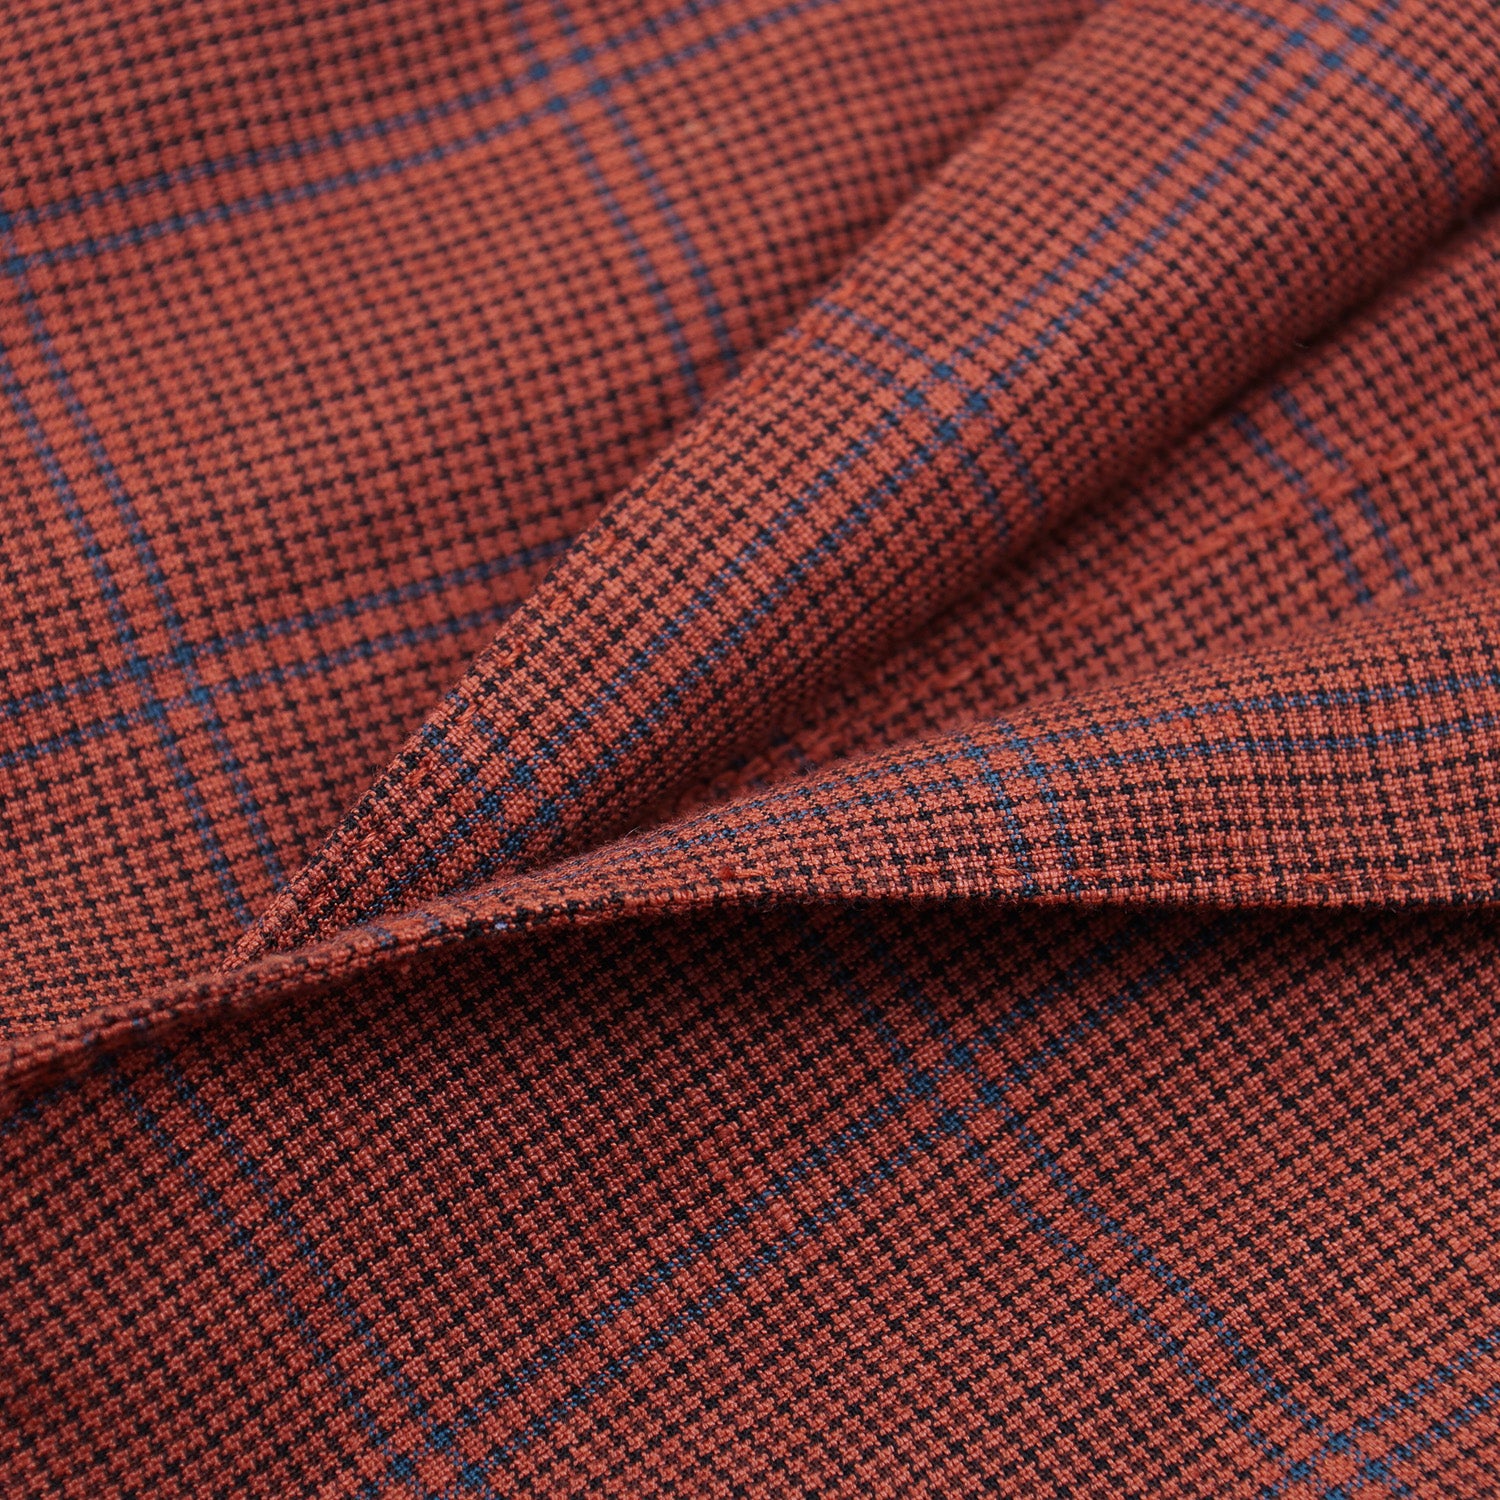 Boglioli Wool-Linen 'K Jacket' Sport Coat - Top Shelf Apparel